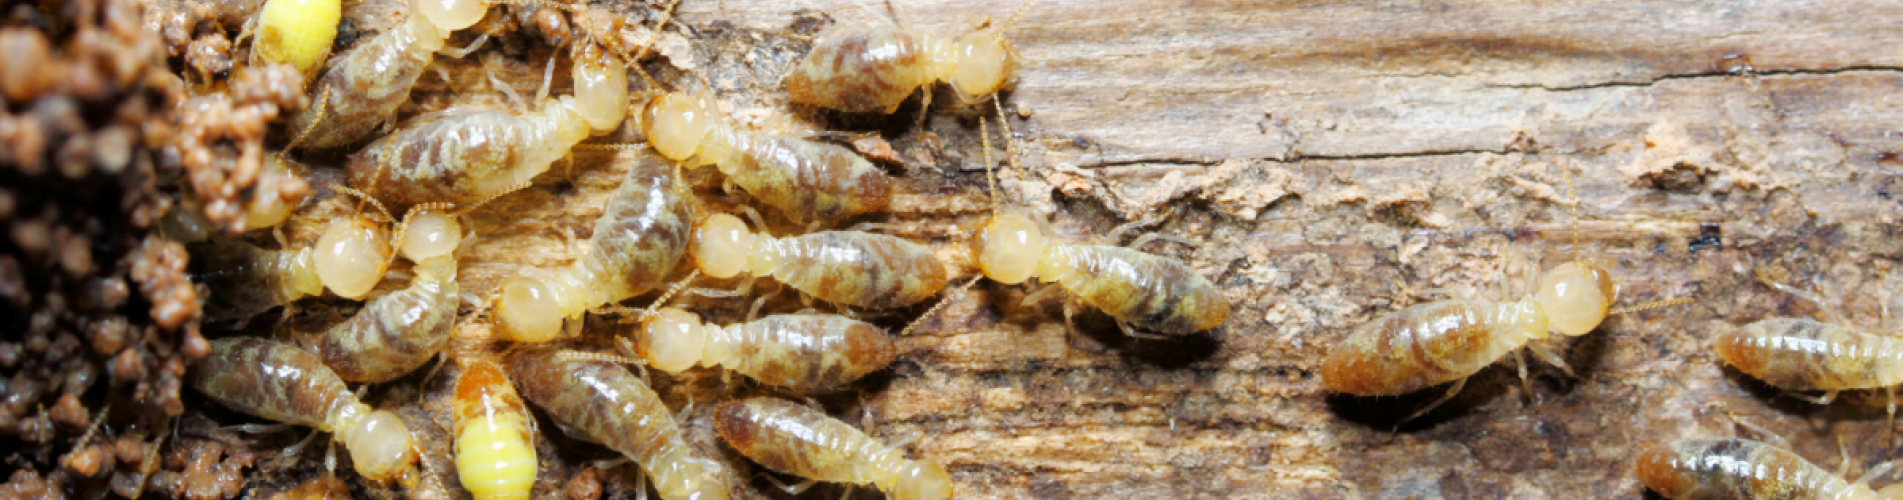 Termite Pest Control & Management Narangba Moreton Bay, Queensland, Australia